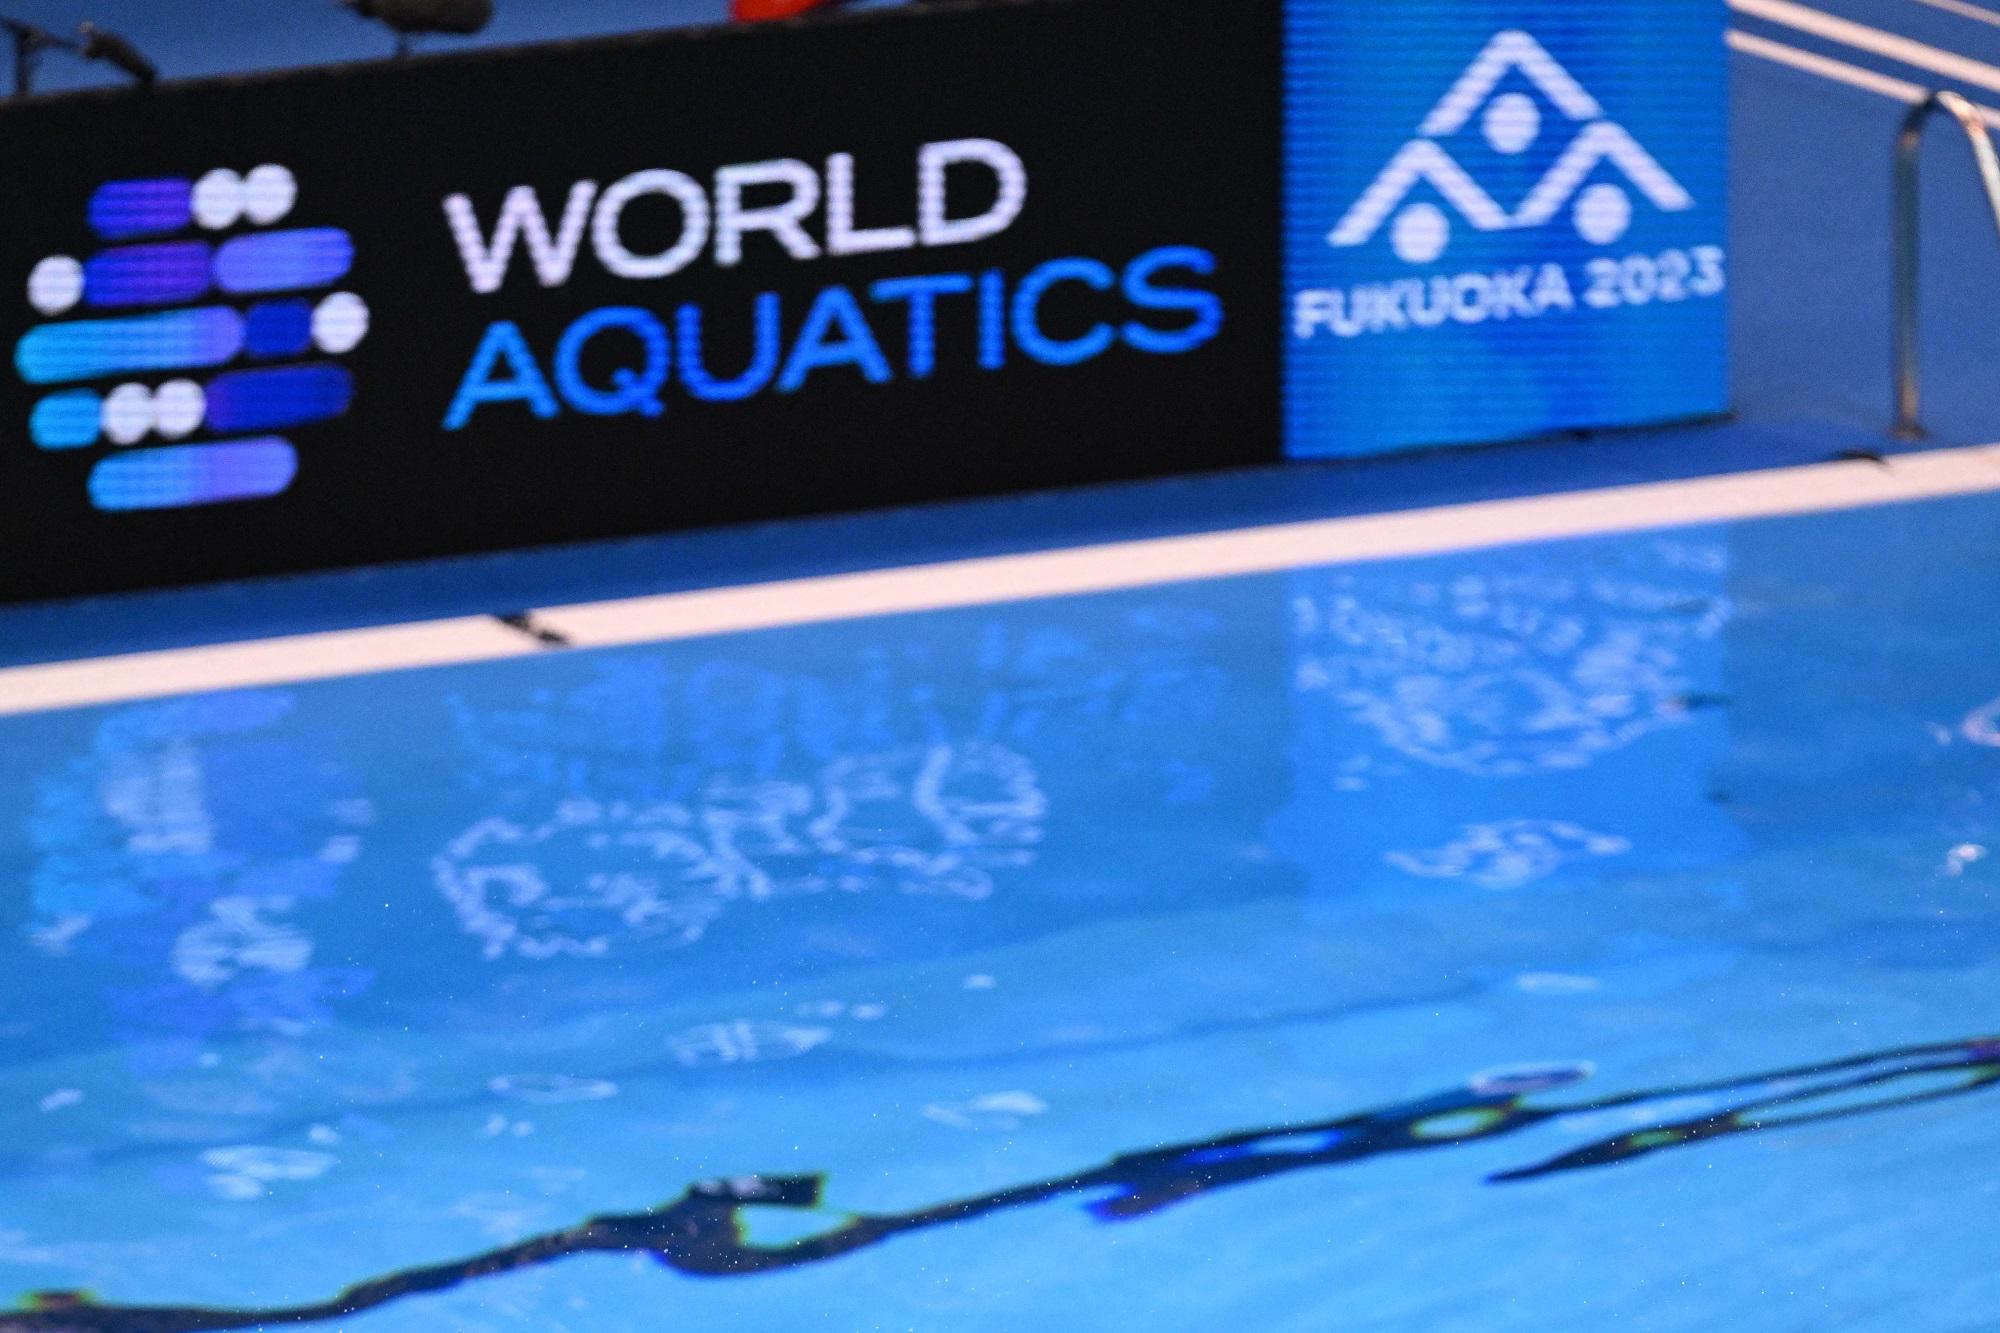 Fukuoka 2023 World Championships Italy's Swim Team Aims for Success